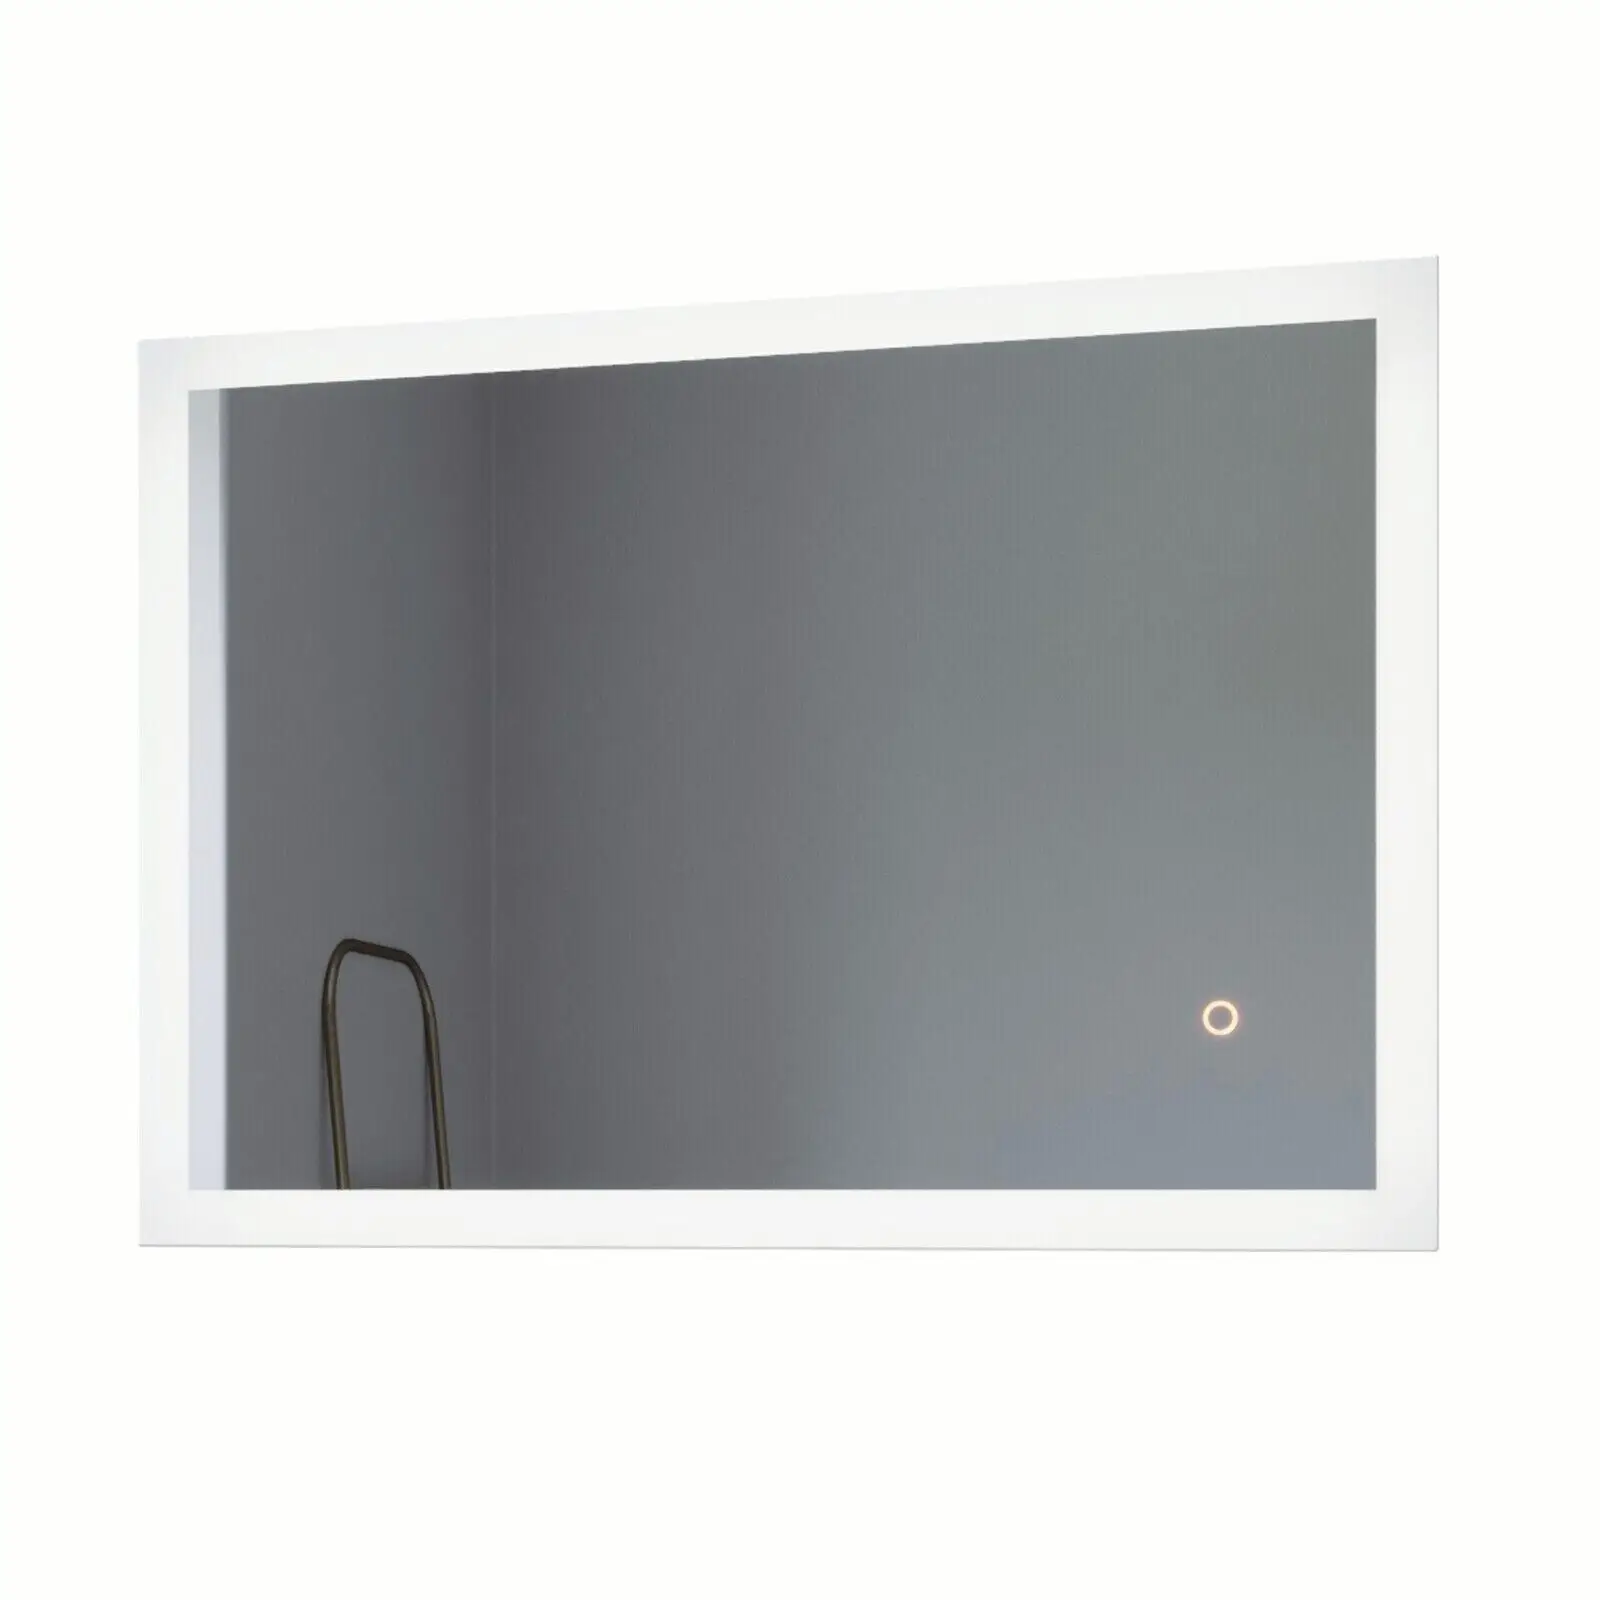 Badezimmerspiegel Ultrad眉nn mit Dimmbar | Wandspiegel